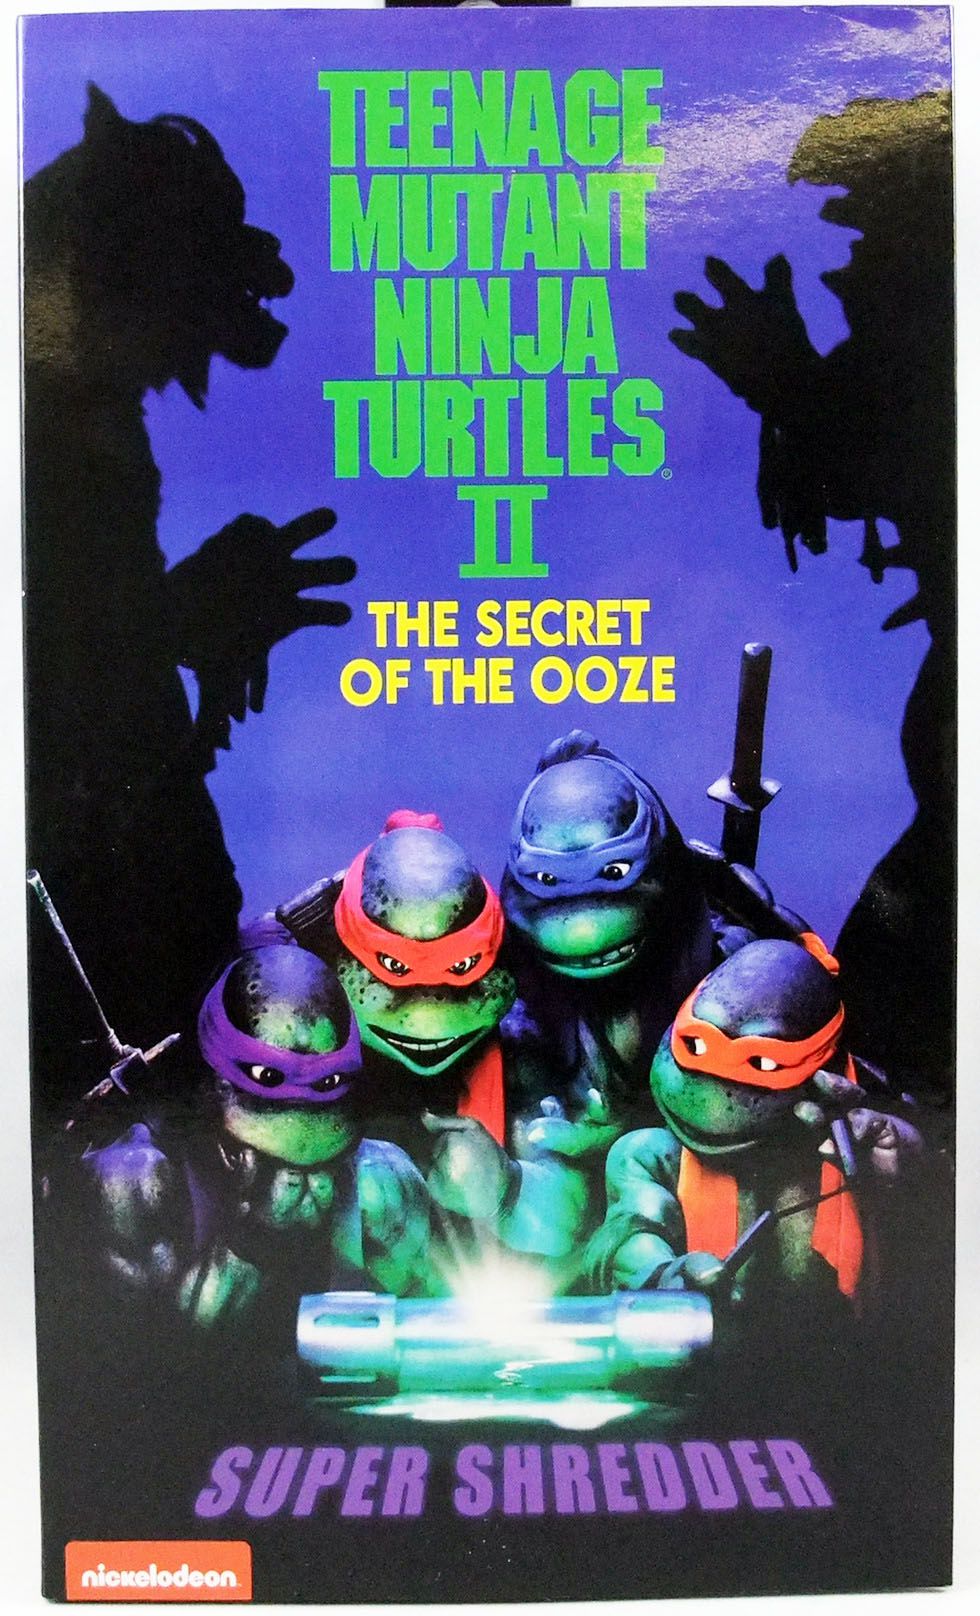 Teenage Mutant Ninja Turtles - NECA - 1991 Movie Super Shredder (The Secret  of the Ooze)